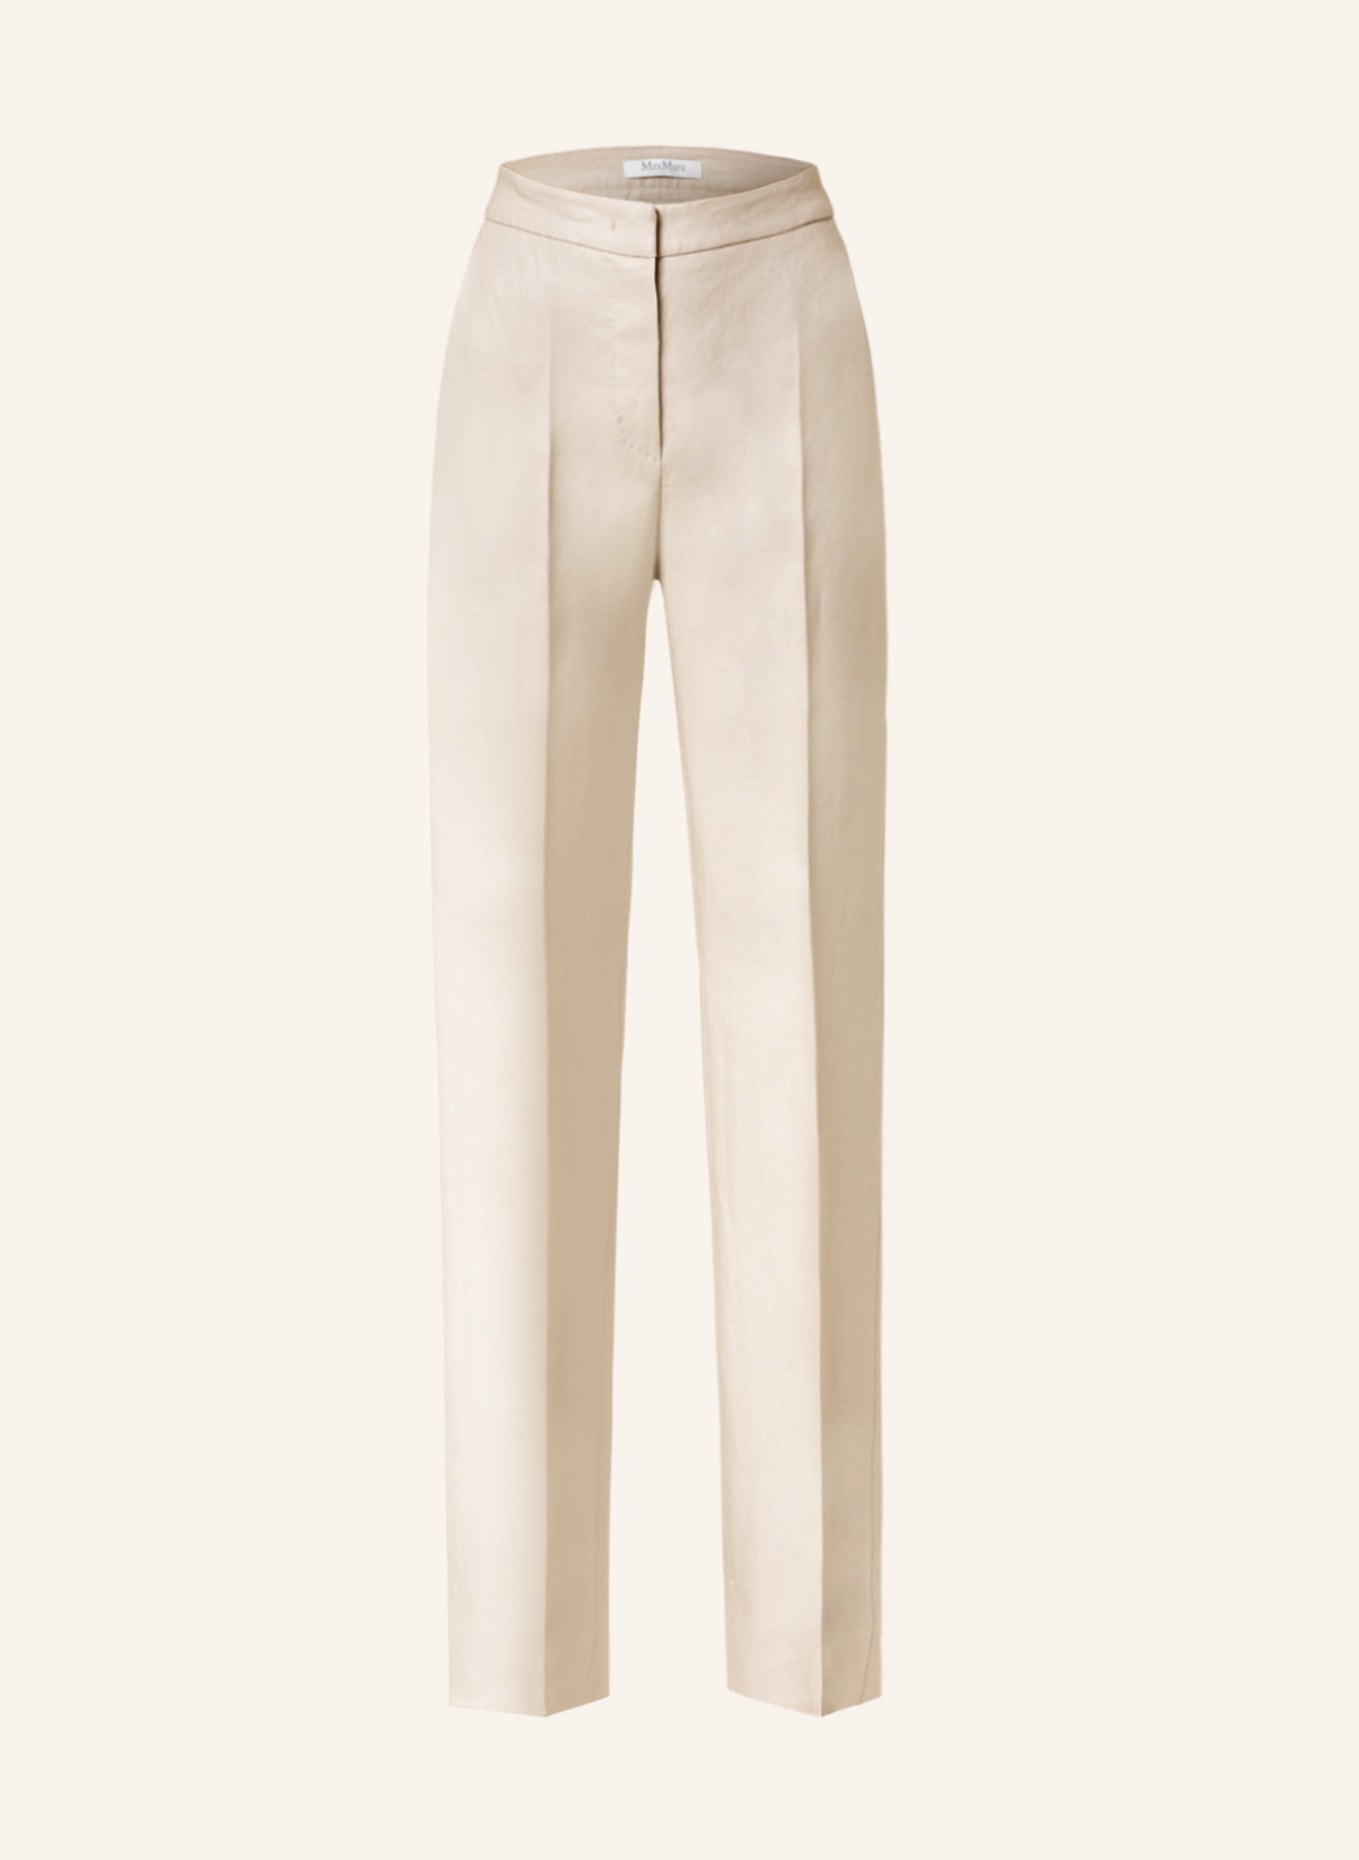 Buy Women OffWhite  Beige Linen Striped Regular Trousers online   Looksgudin